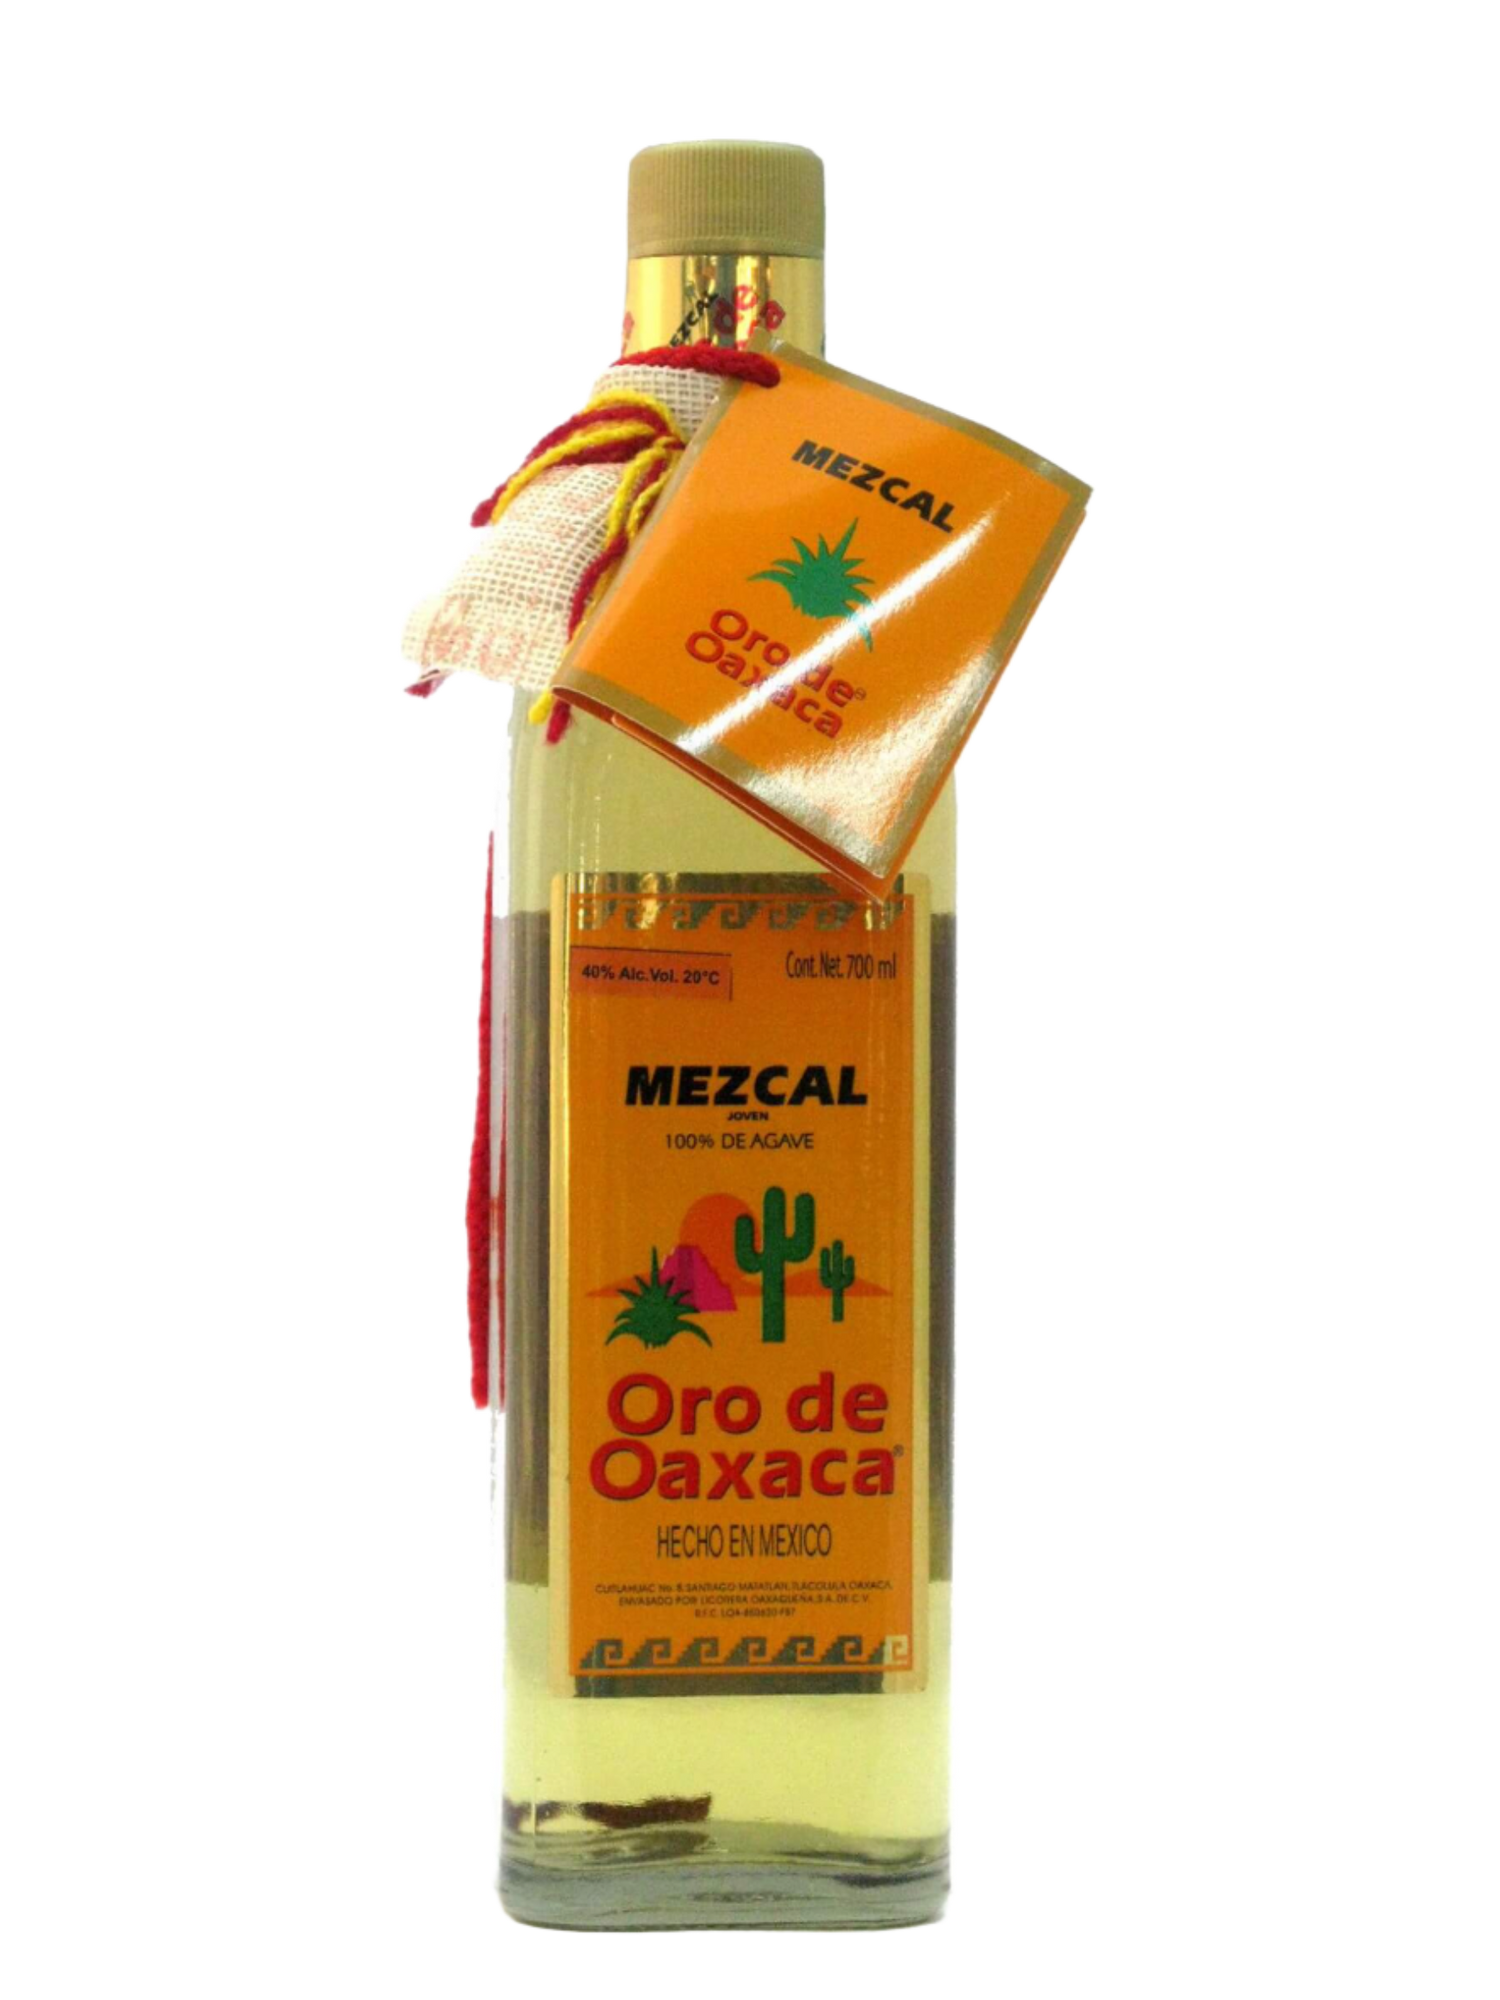 ORO DE OAXACA MEZCAL WITH WORM